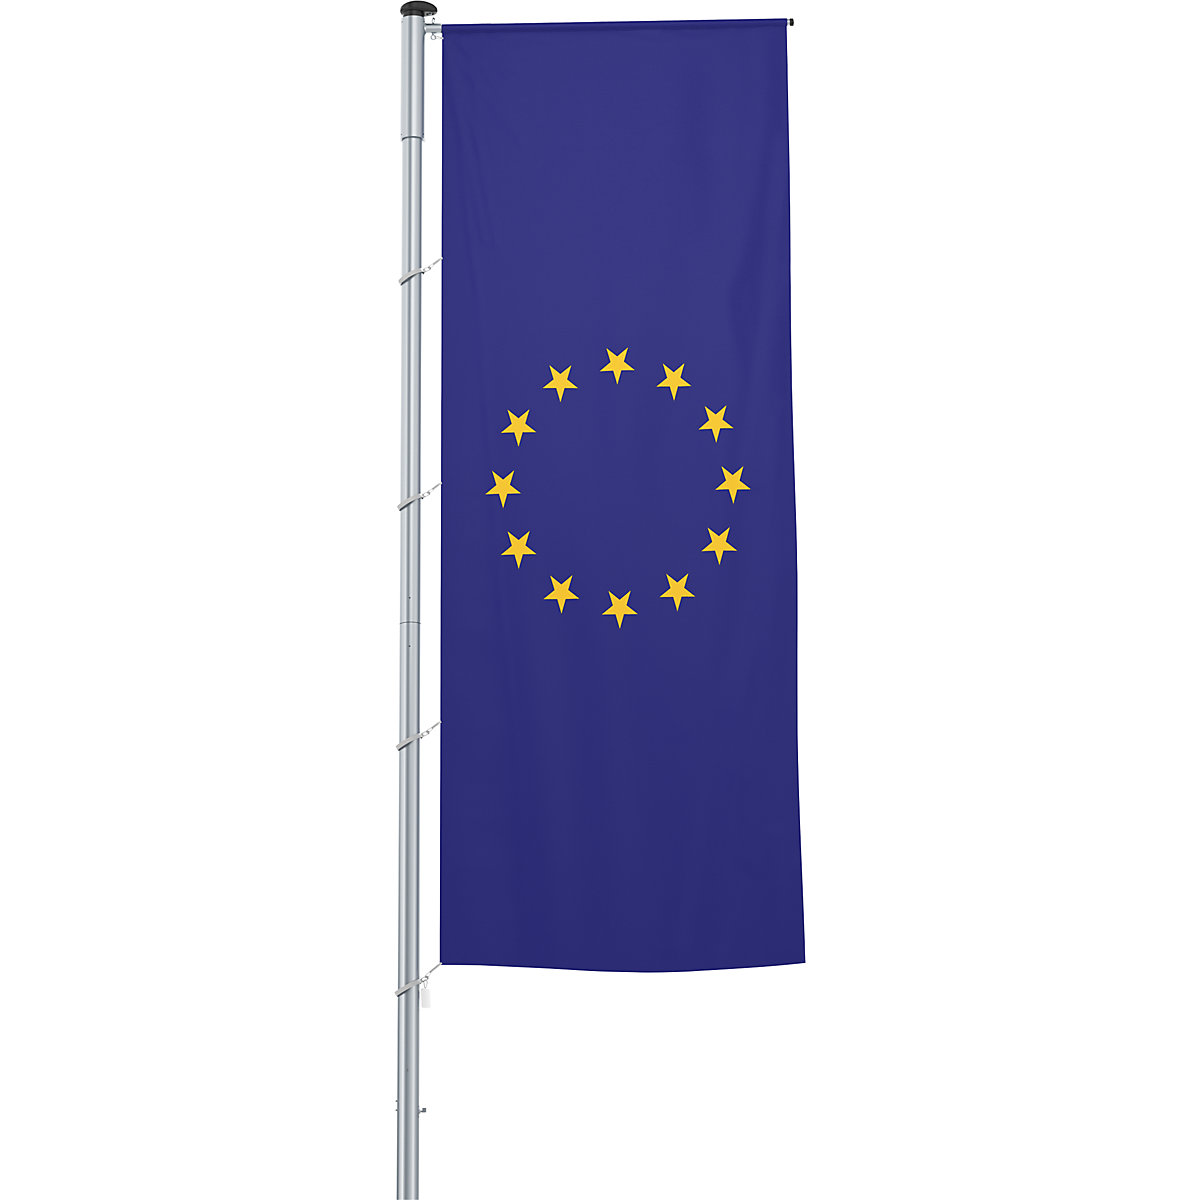 Mannus – Bandera con pluma/bandera del país, formato 1,2 x 3 m, bandera de Europa